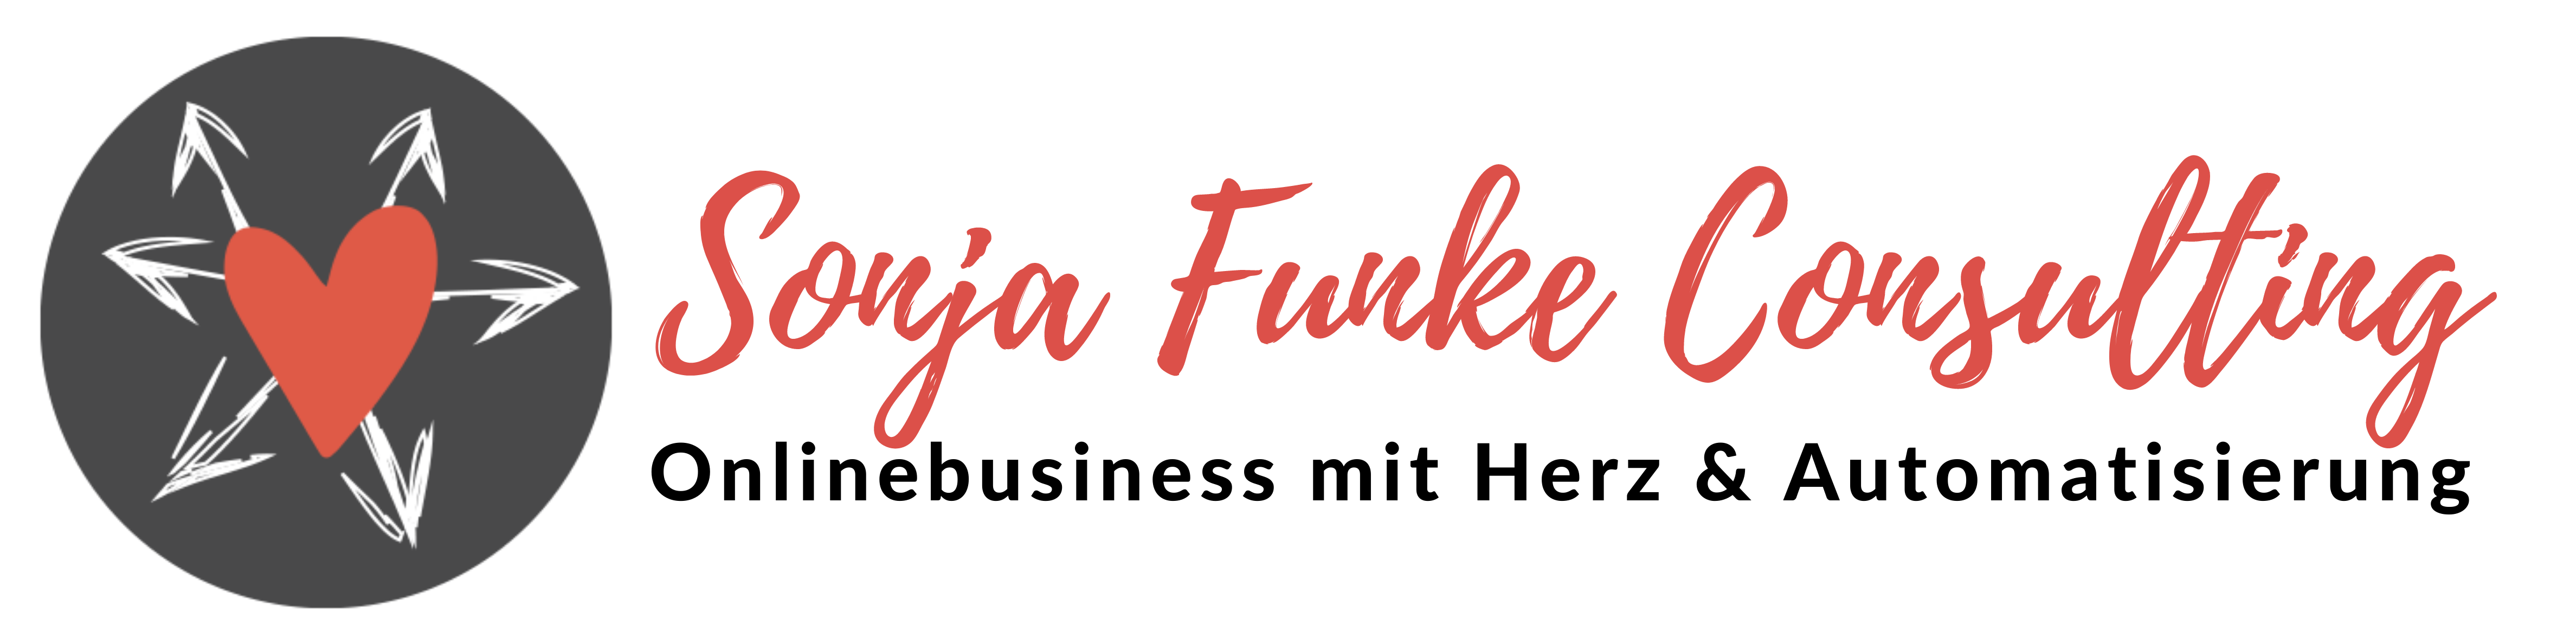 Sonja Funke Consulting